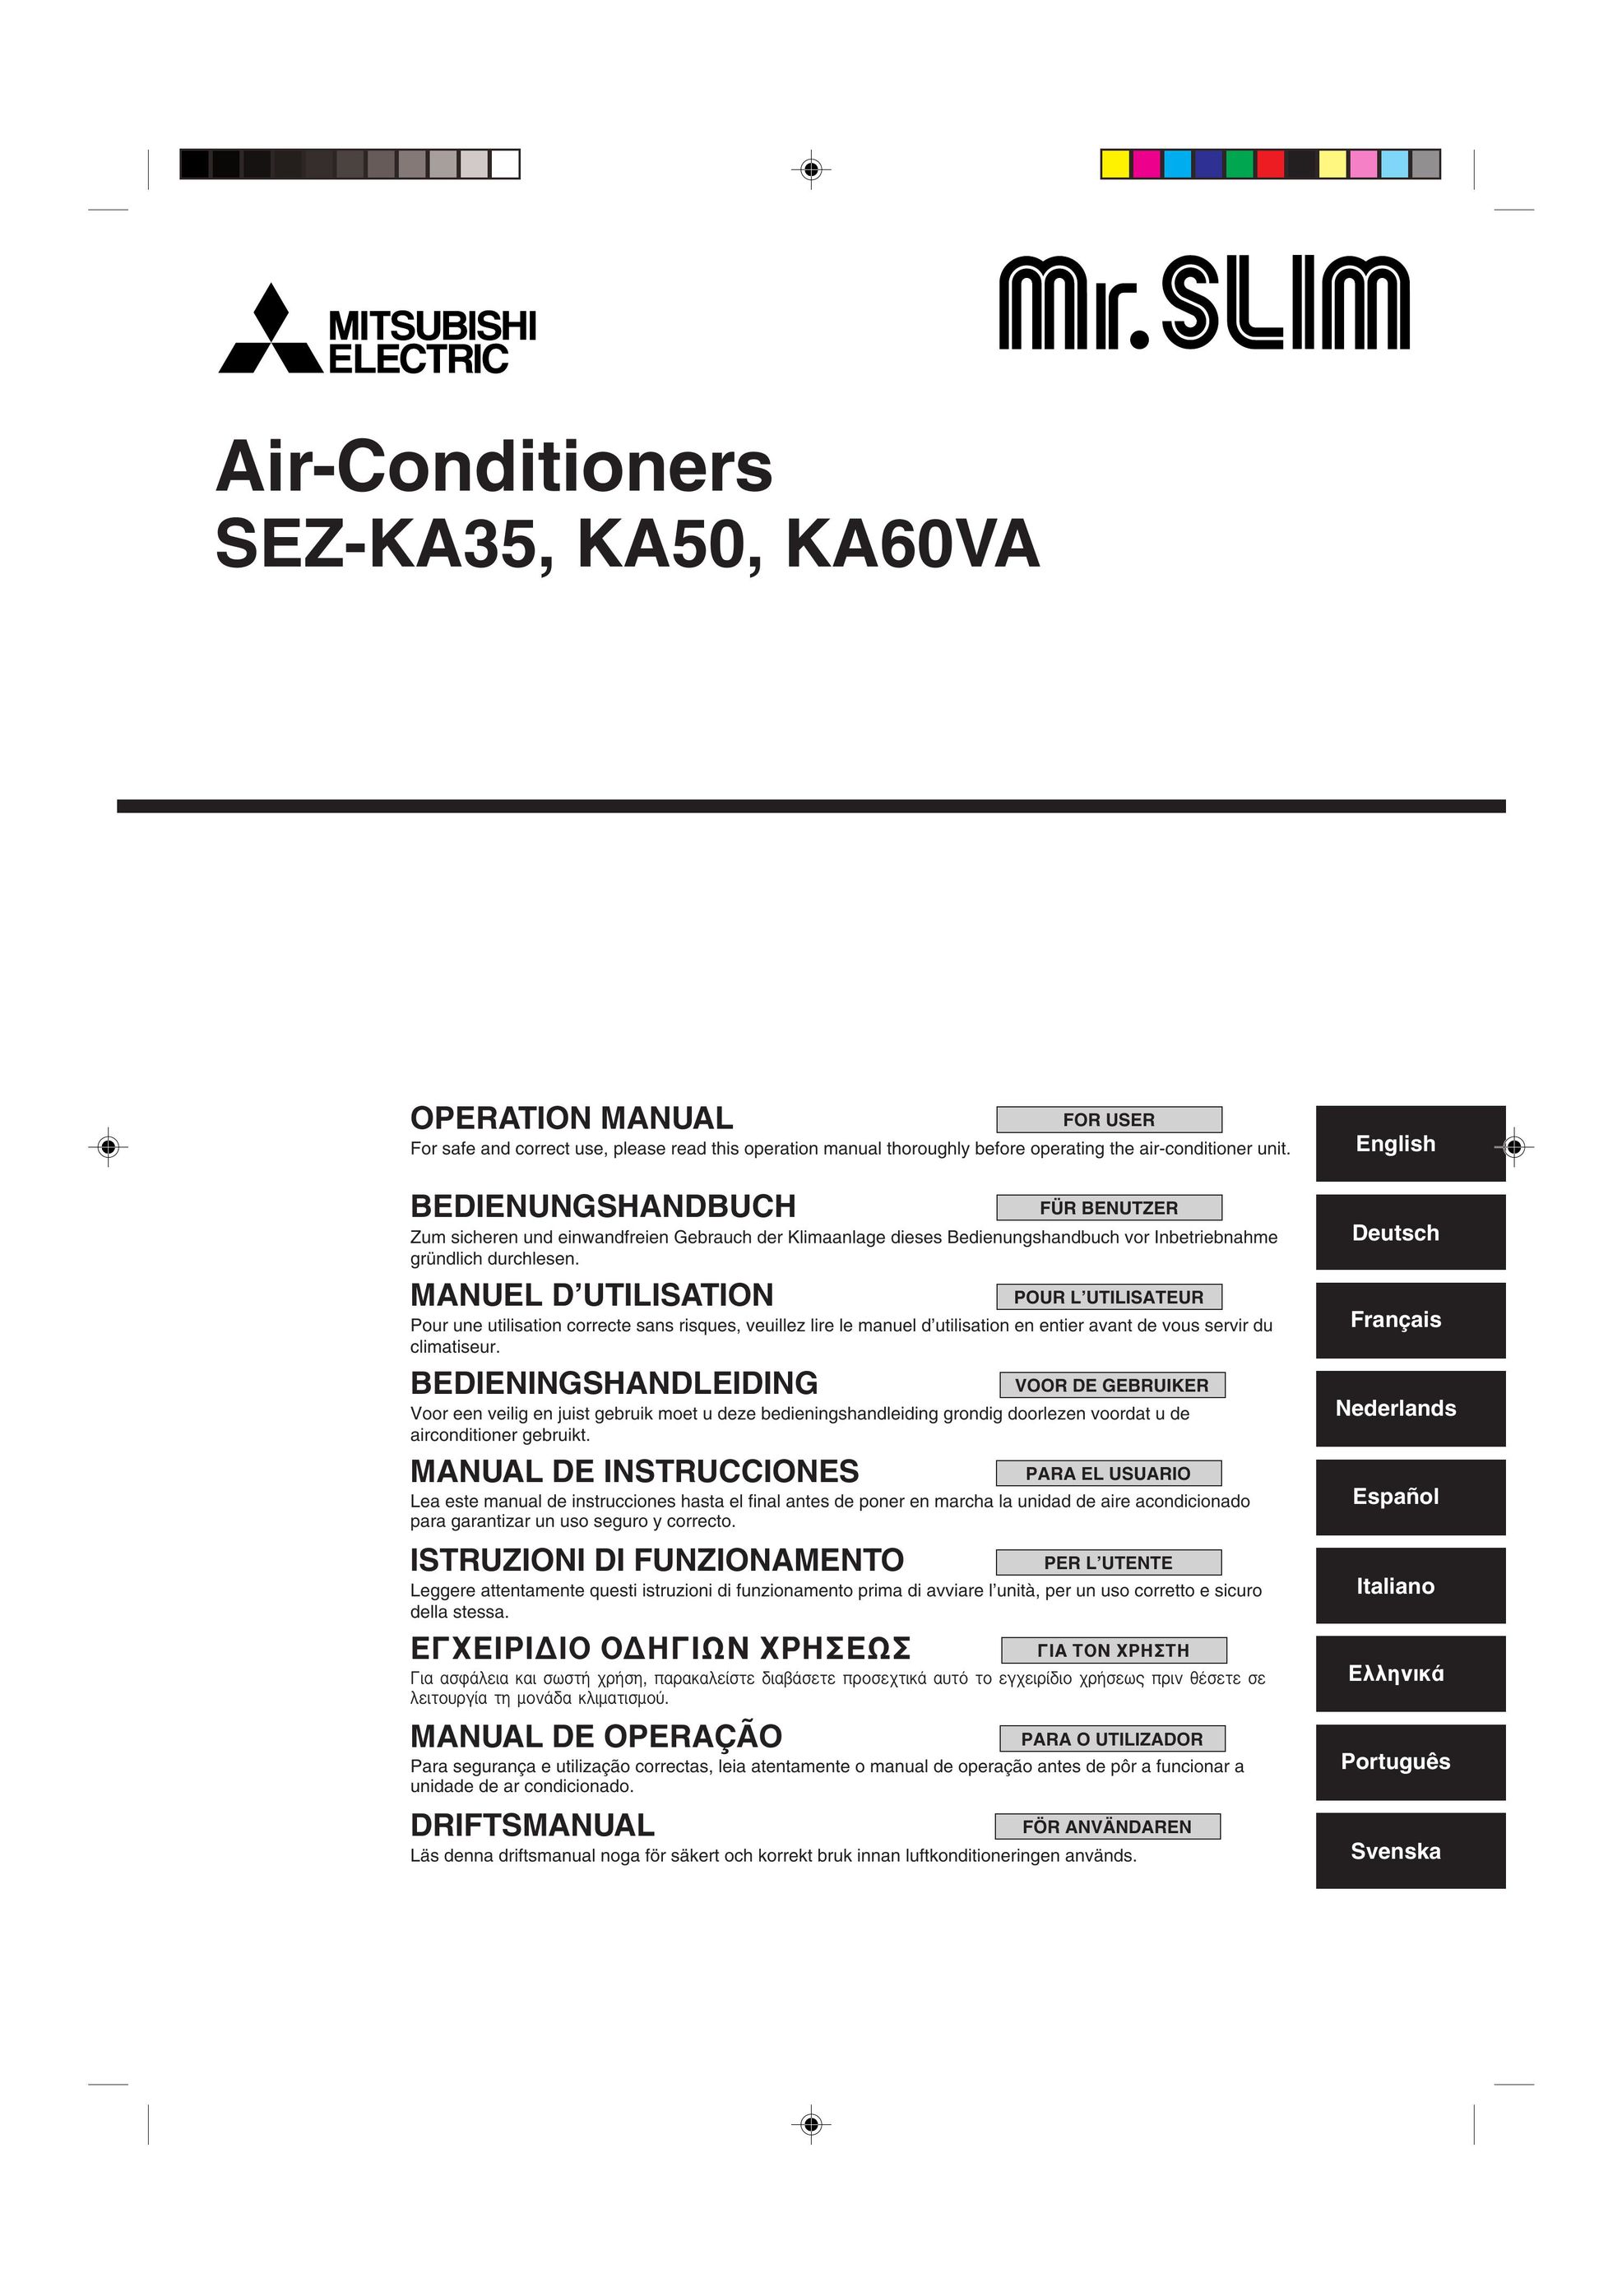 Mitsubishi Electronics KA50 Air Conditioner User Manual